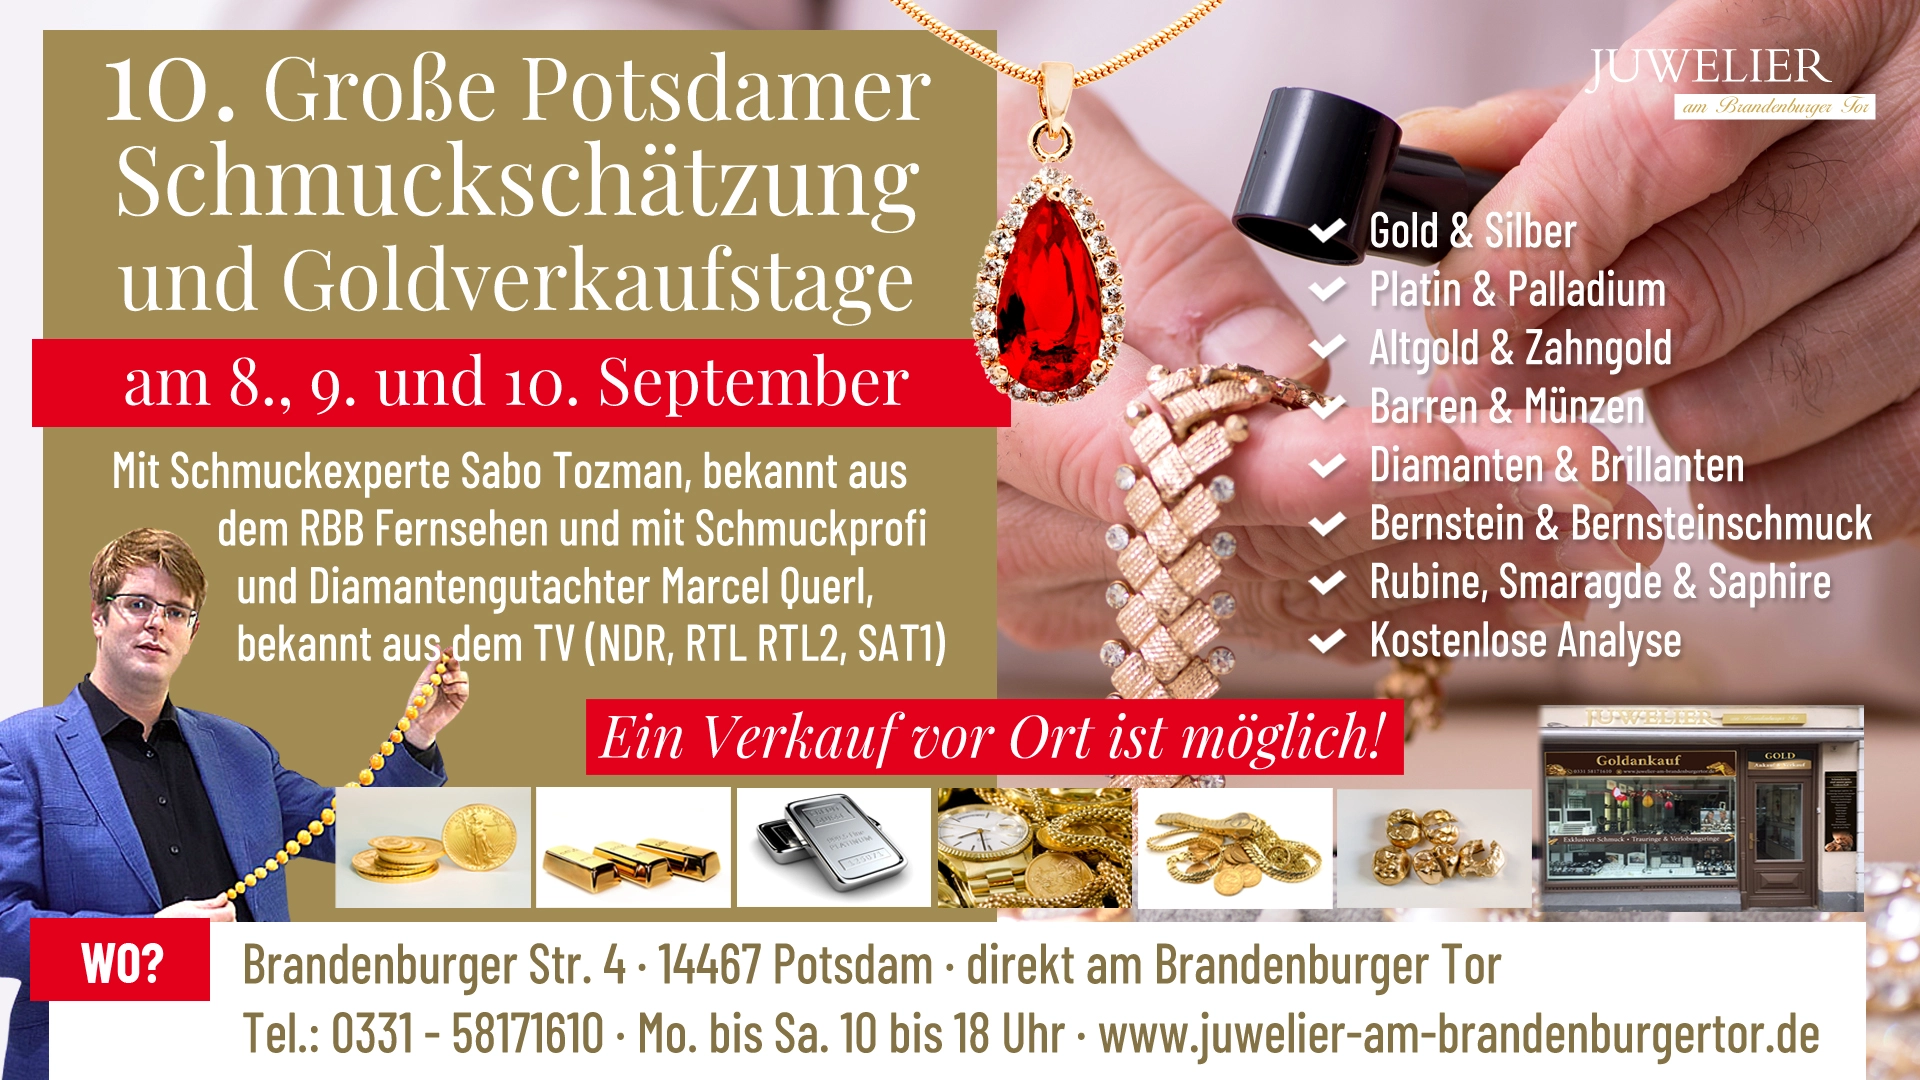 10. Große Potsdamer Schmuckschätzung und Goldverkaufstage am 8., 9. und 10. September